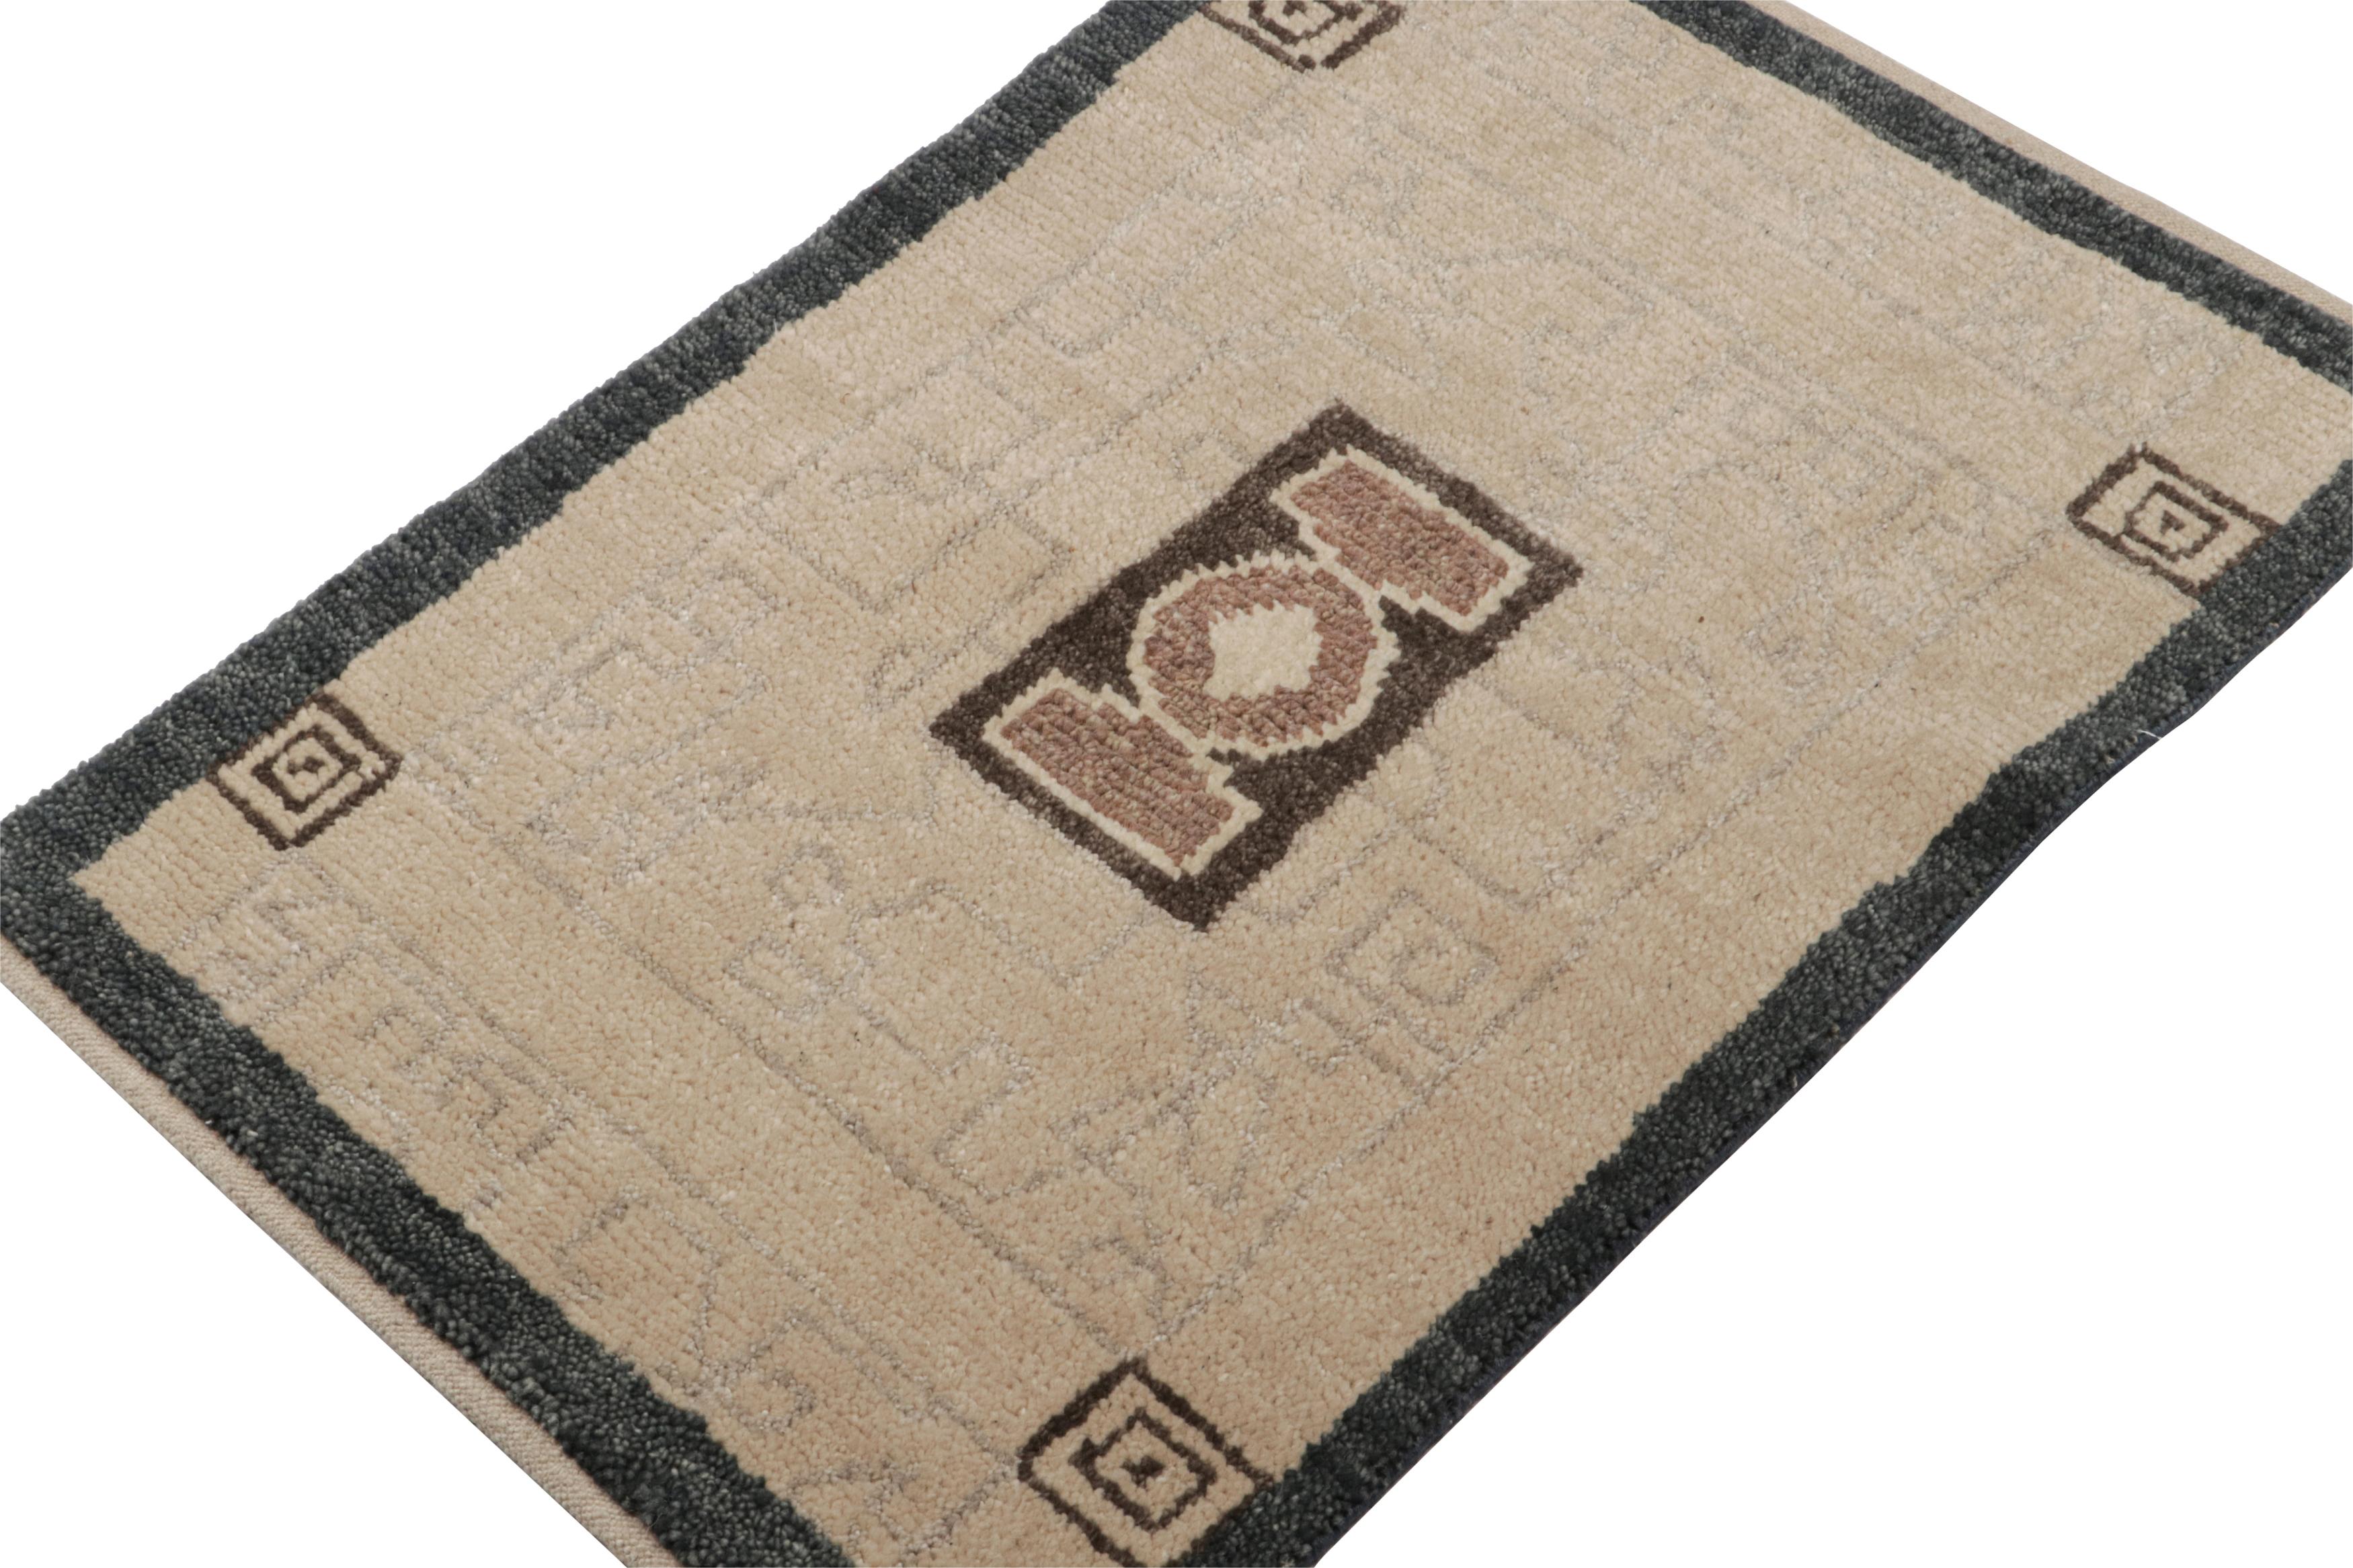 Ce tapis 2x3 est un nouvel ajout à la collection Art Deco de Rug & Kilim.  

Sur le Design : 

Noué à la main en laine, ce tapis contemporain de taille cadeau s'inspire du style Art déco français des années 1920. Son motif géométrique présente un